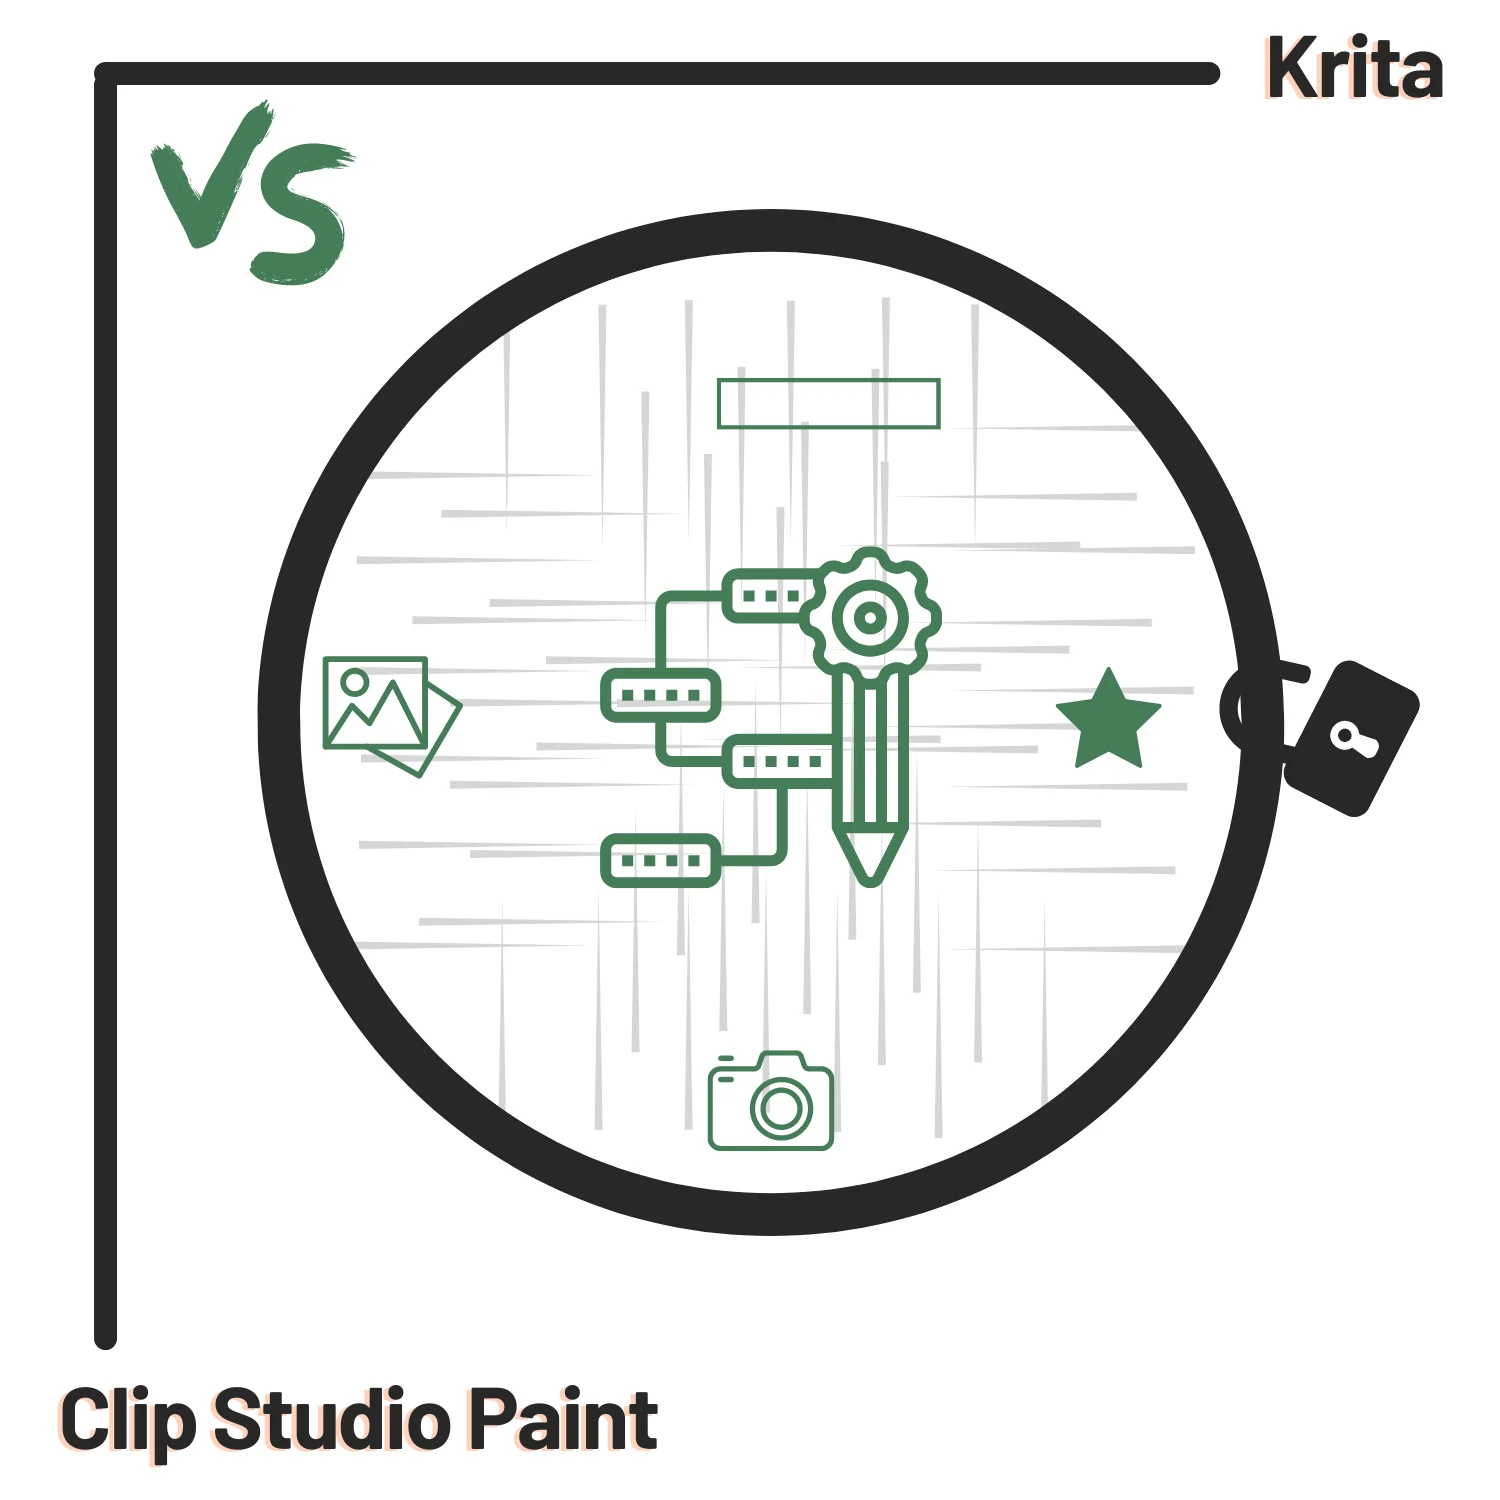 Krita vs Clip Studio Paint